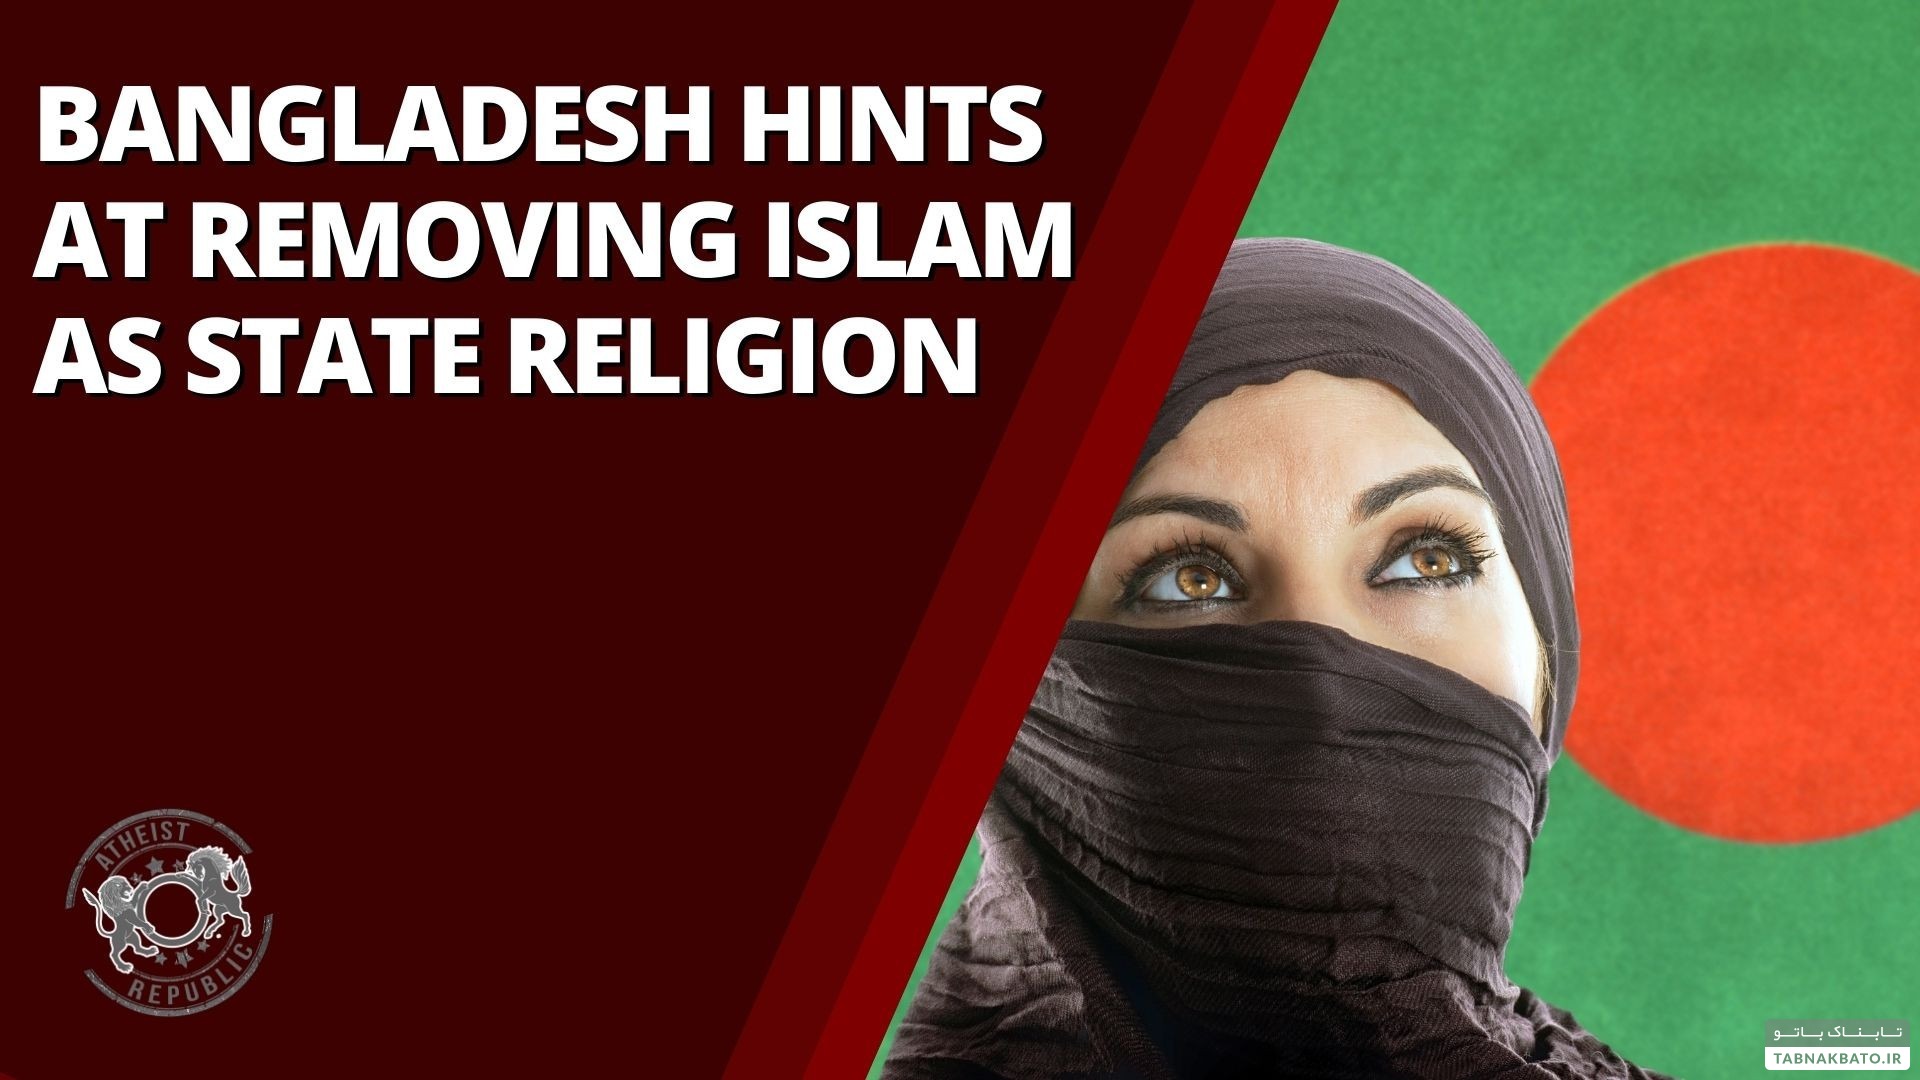 حذف دین اسلام به عنوان دین رسمی در بنگلادش